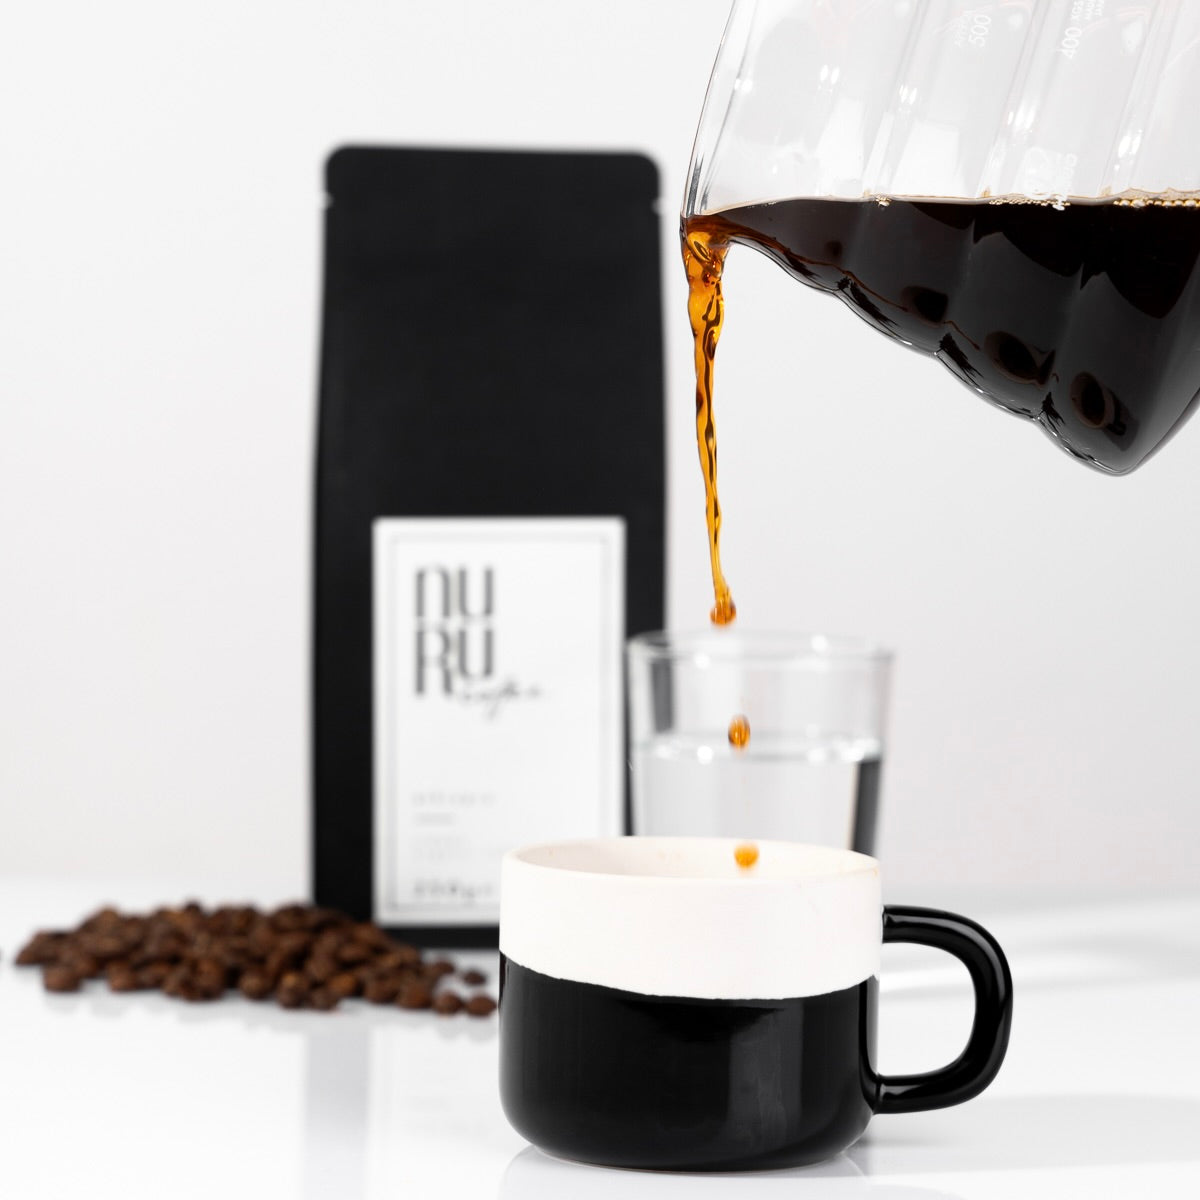 Von den Gründerinnen Sali und Sara Nuru I Kaffeetasse mit eingeschenktem Kaffee und Verpackung von nuruCoffee - nachhaltiger, fair produzierter Bio-Kaffee mit social impact